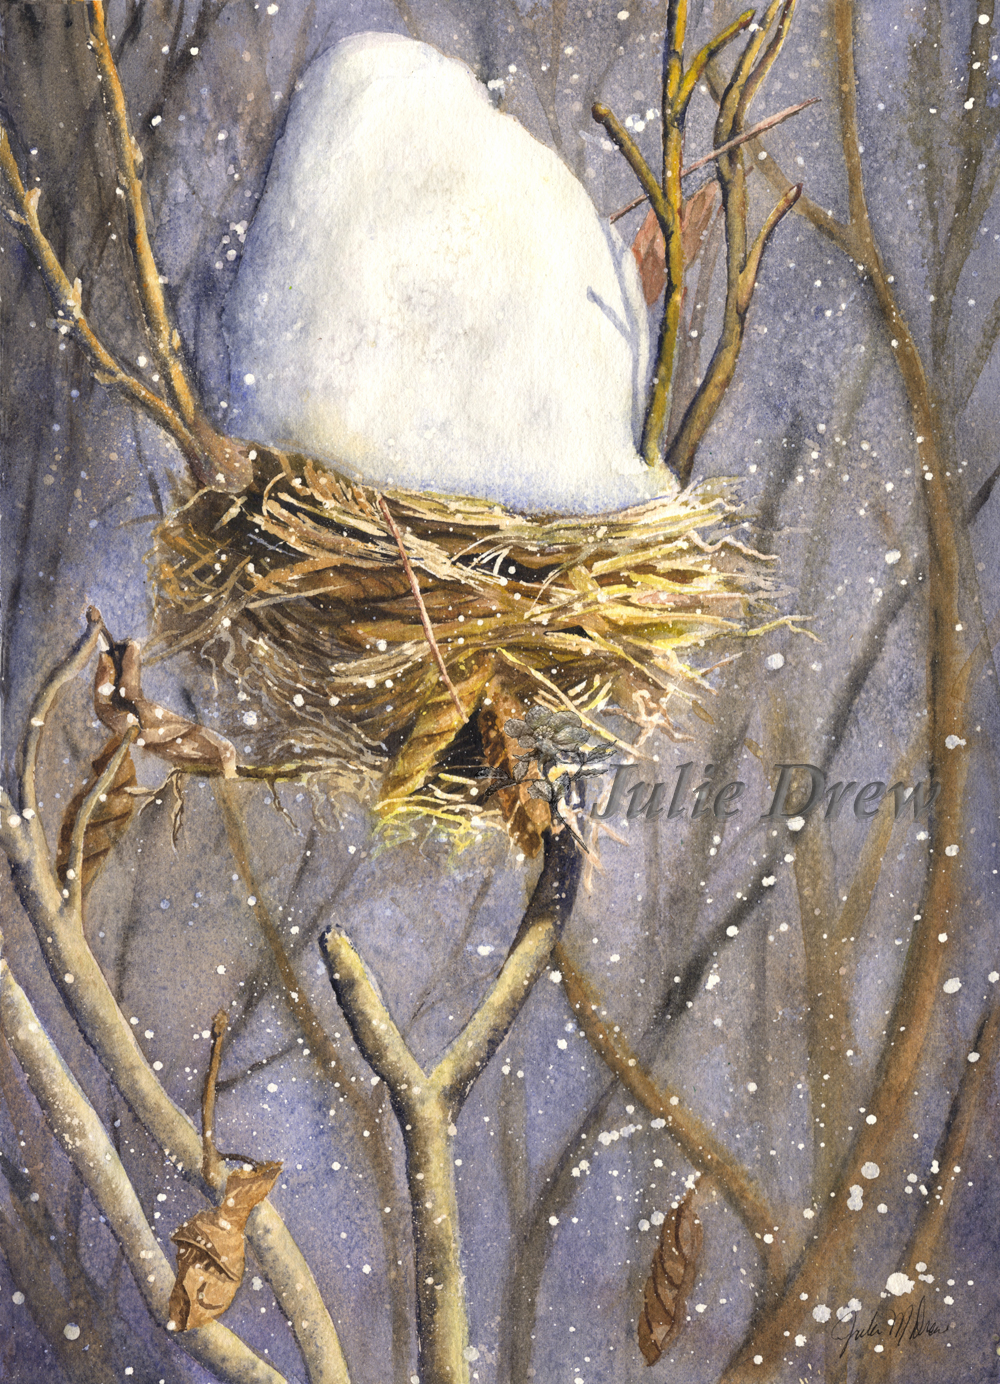 Empty Nest, watercolor by Julie Drew